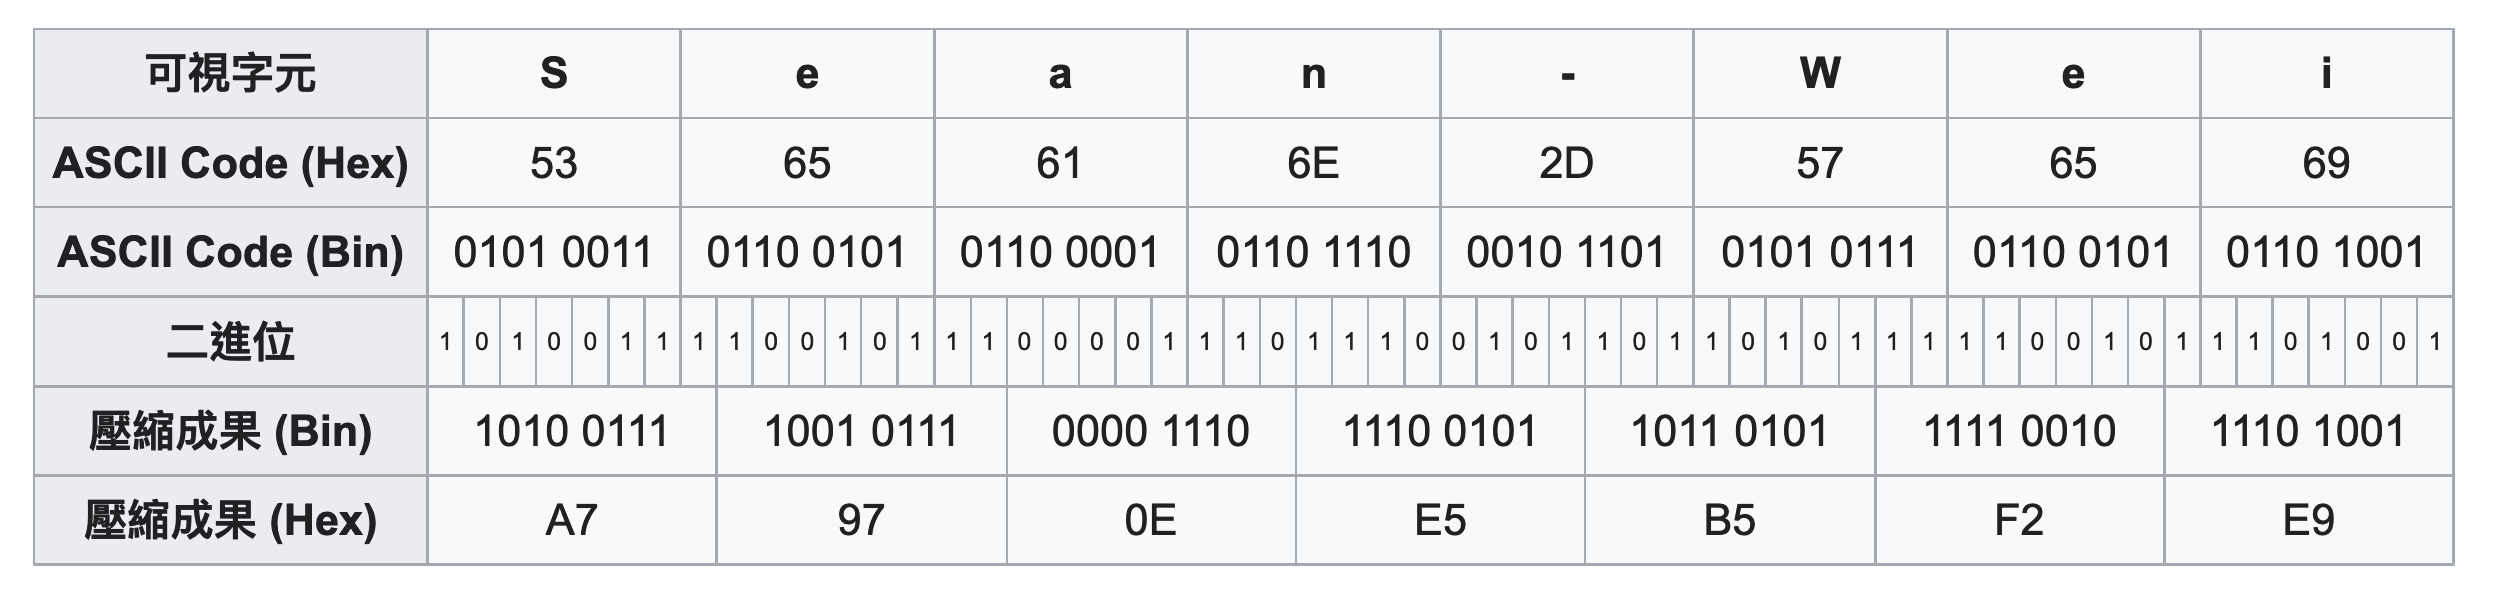 每 8 個可視字元可映射至 7 bytes